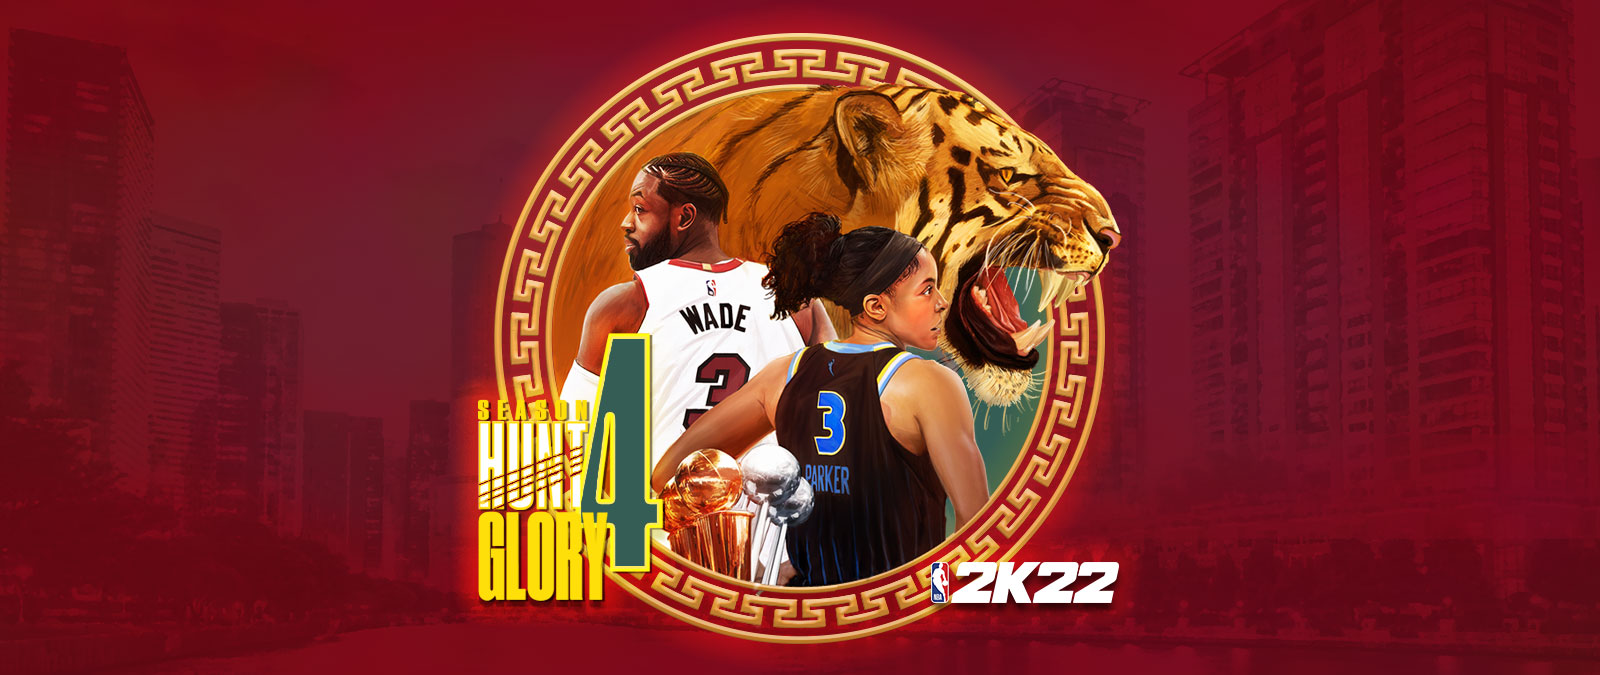 NBA 2K22, сезон 4: Hunt 4 Glory, на круглом графическом элементе, наложенном на городской пейзаж в красных оттенках, изображен рычащий тигр, а также Дуэйн Уэйд и Кэндис Паркер со спины. 